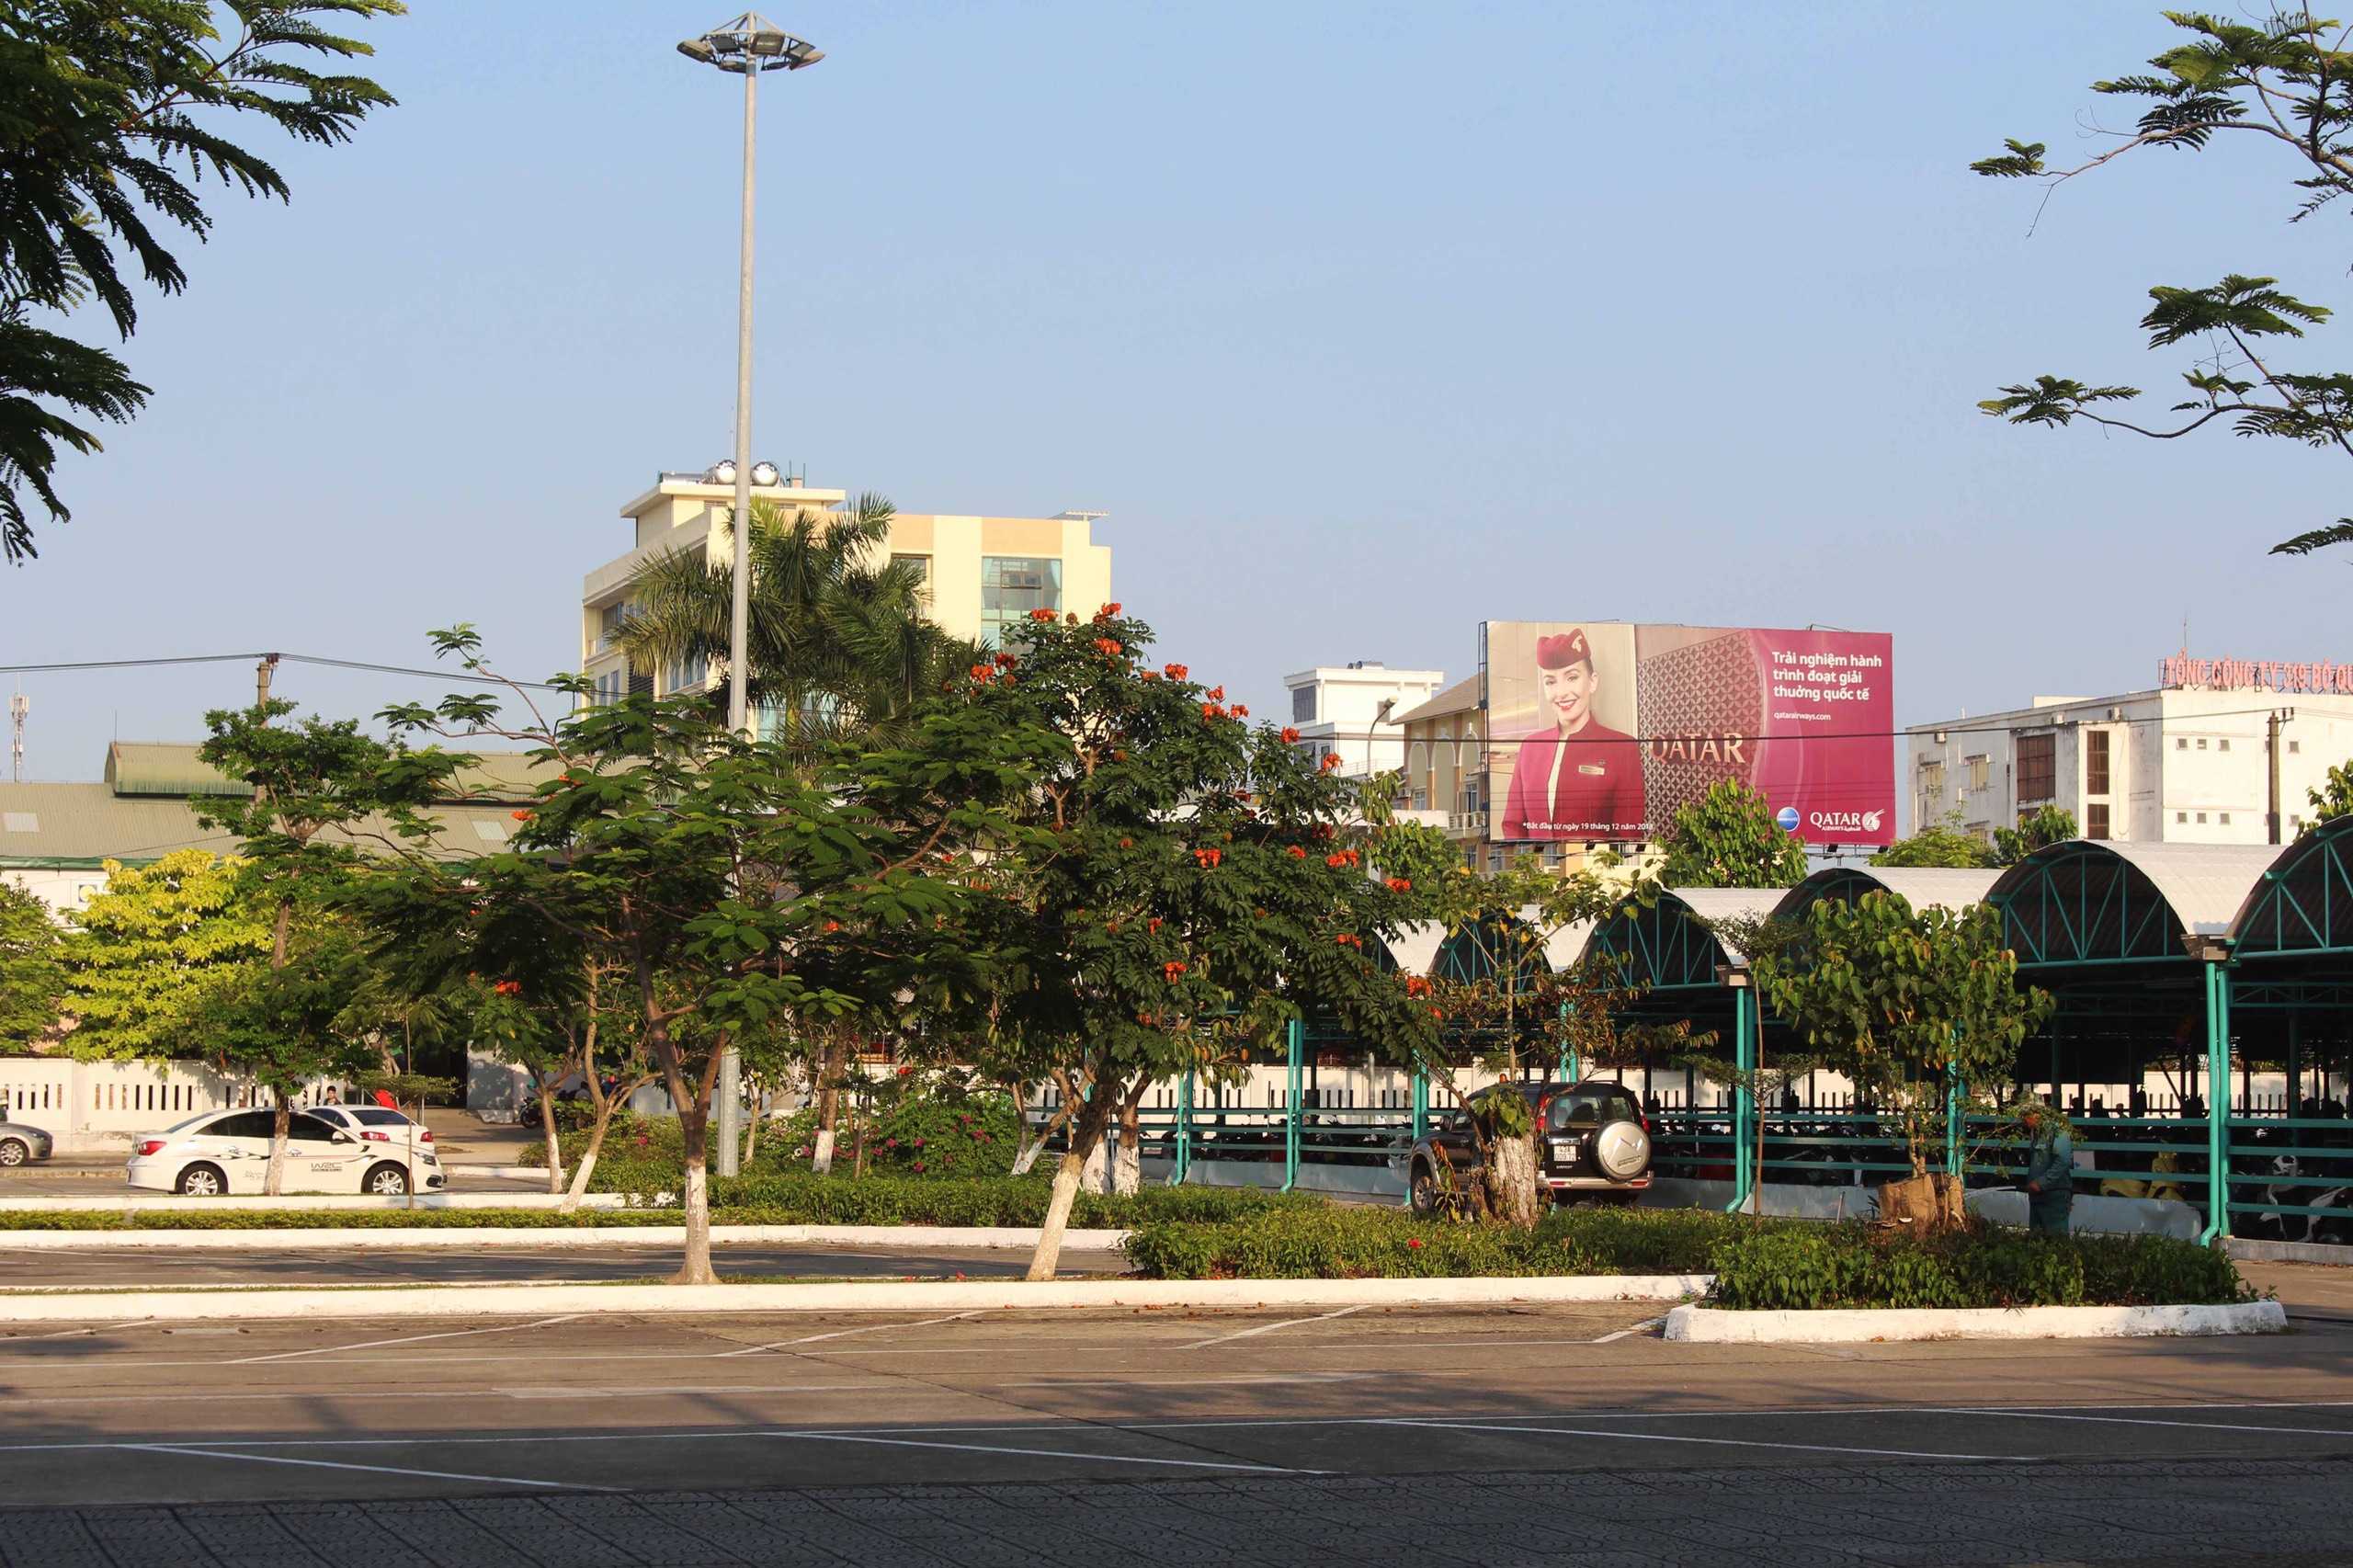 Biển quảng cáo S7 - Lối ra vào sân bay quốc tế Đà Nẵng, Đà Nẵng